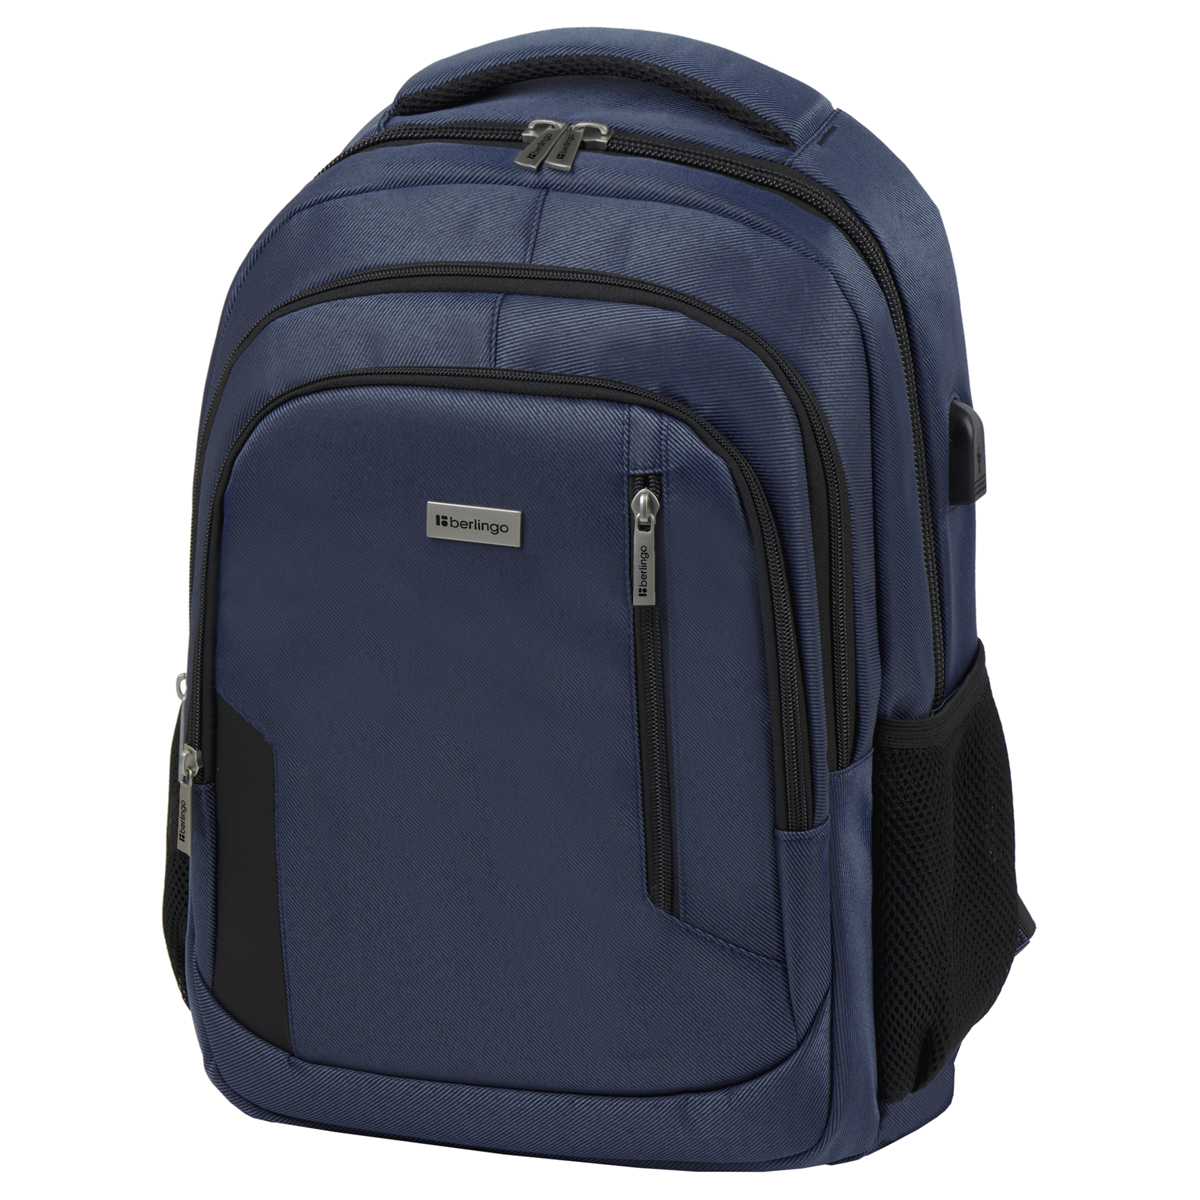 Рюкзак Berlingo City Comfort blue 42*29*17см, 3 отделения, 3 кармана, отделение для ноутбука, USB 